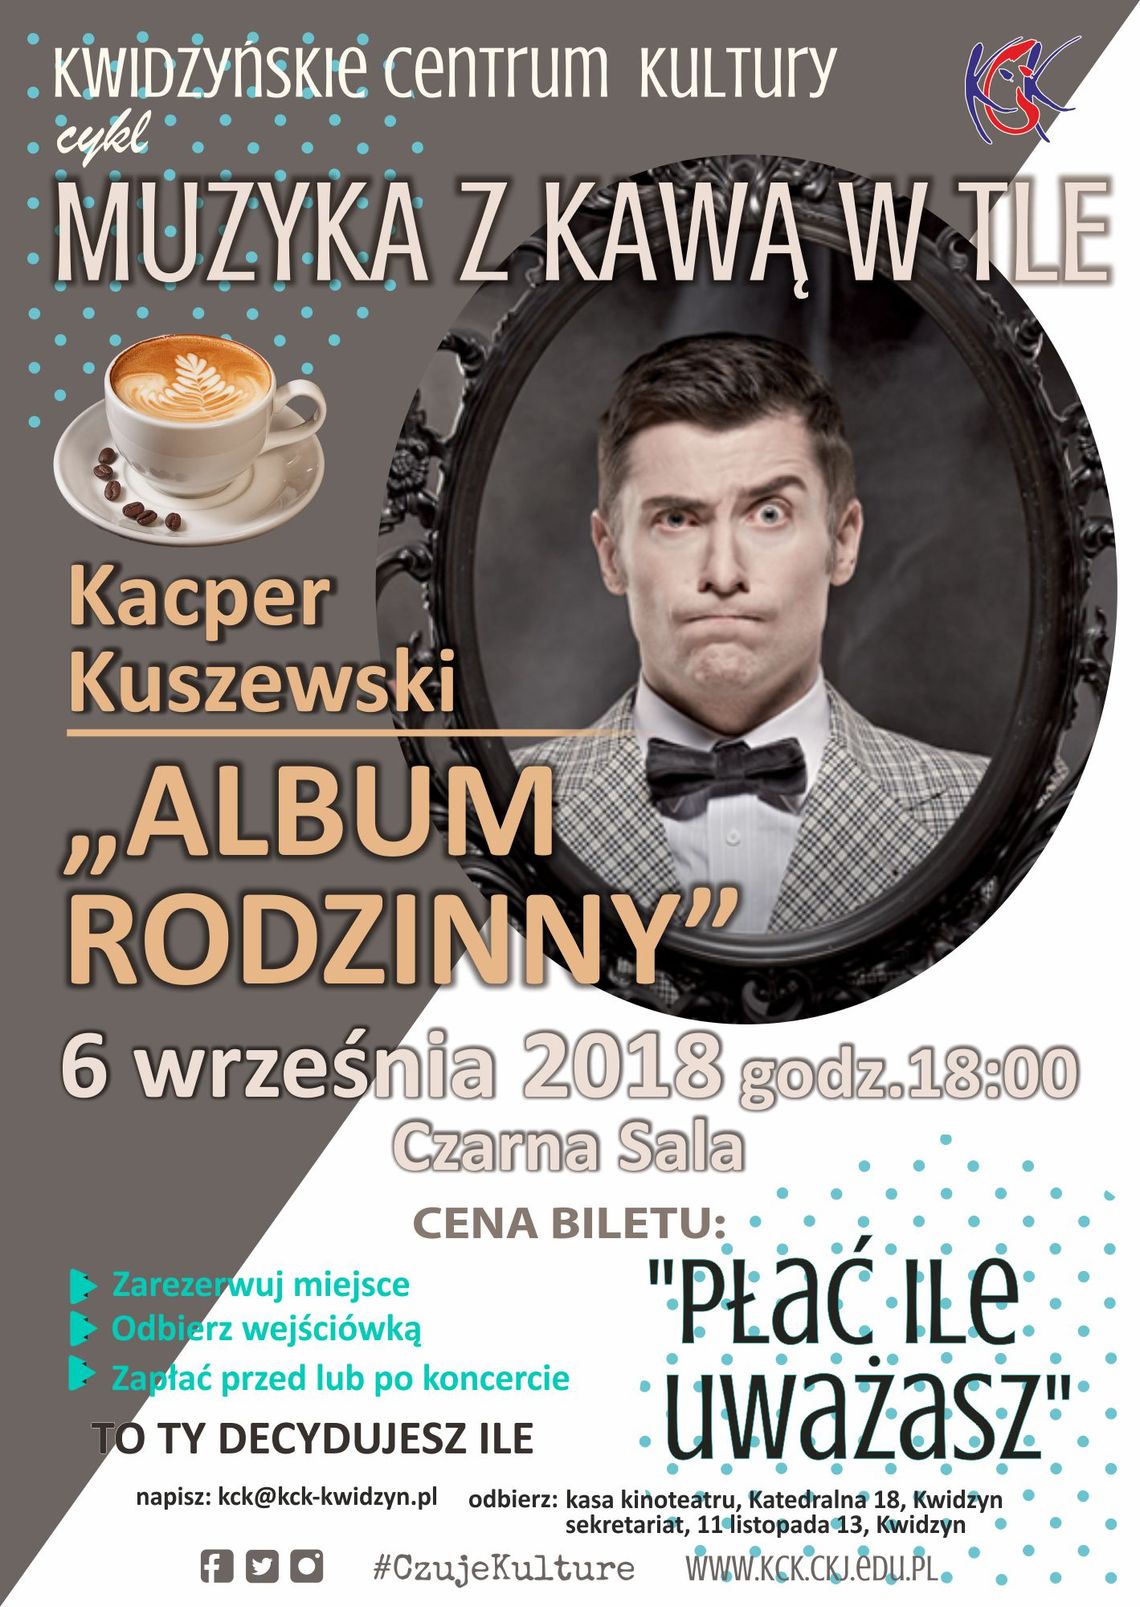 Muzyka z kawą w tle… Kacper Kuszewski i jego “Album rodzinny”.